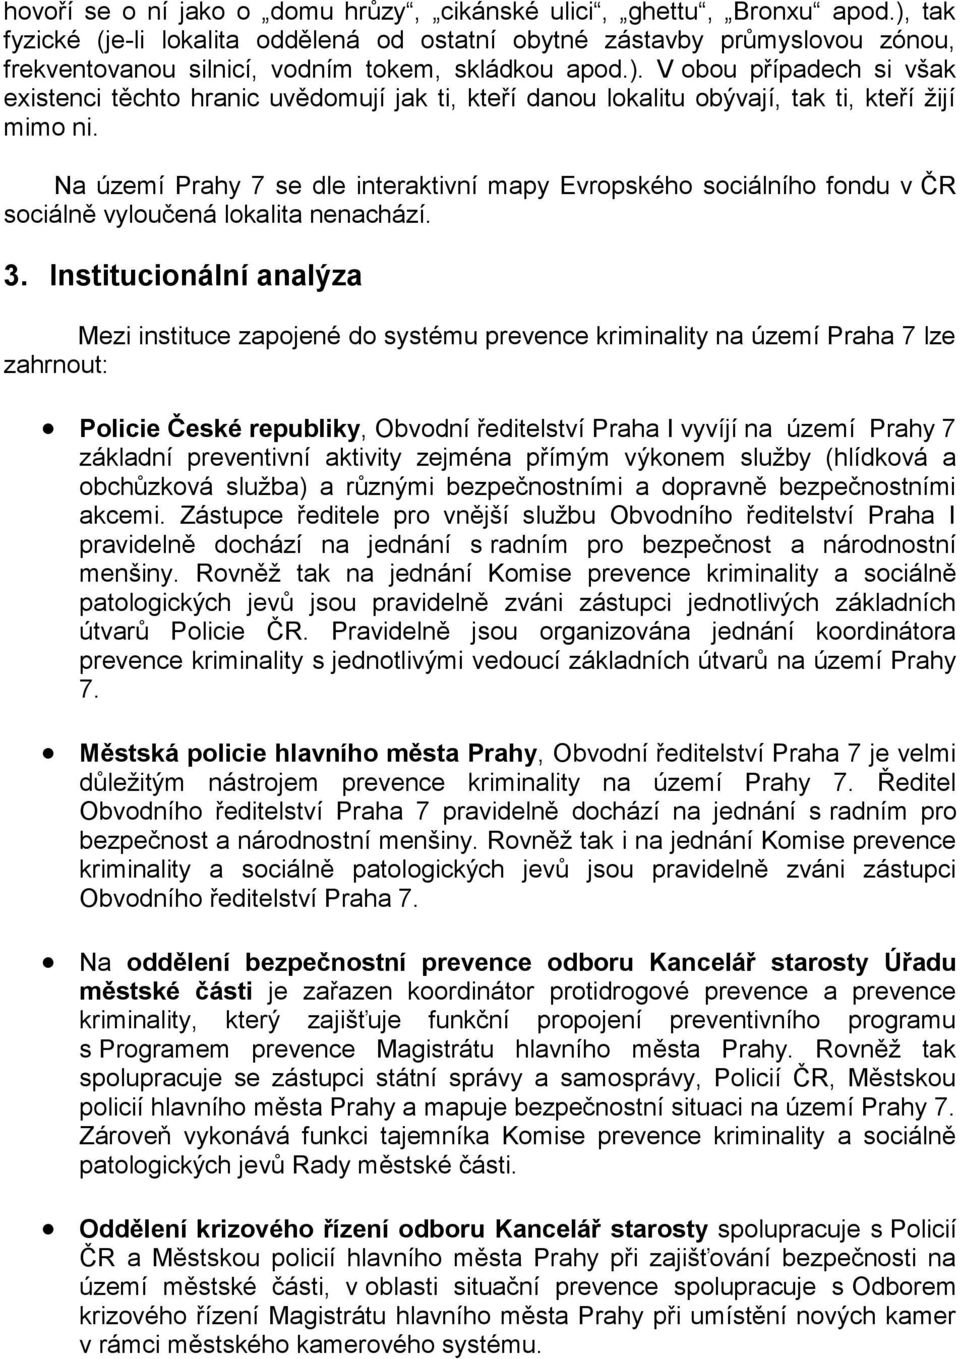 Na území Prahy 7 se dle interaktivní mapy Evropského sociálního fondu v ČR sociálně vyloučená lokalita nenachází. 3.